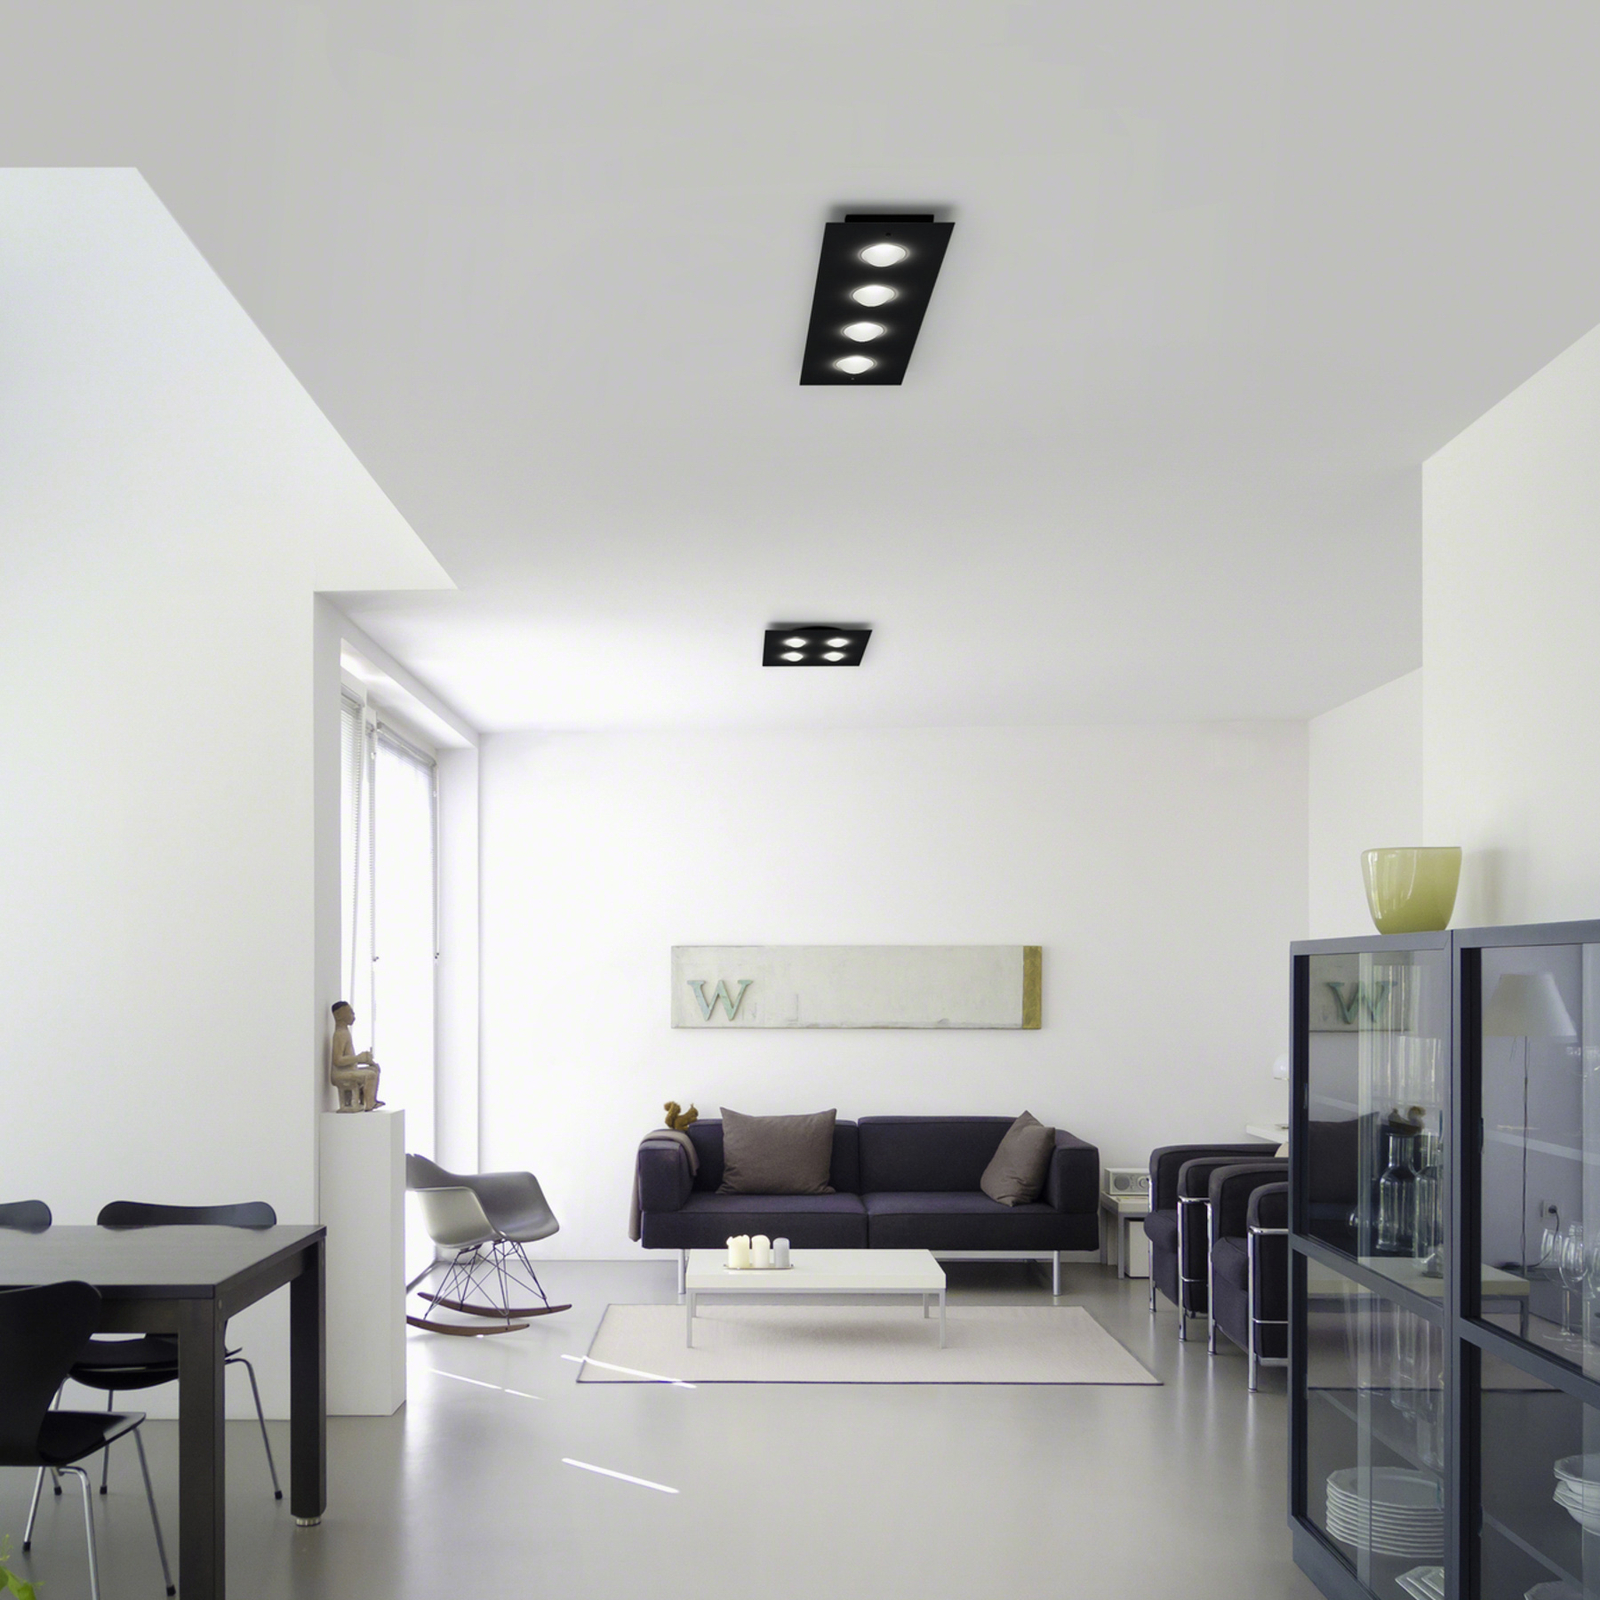 Candeeiro de teto LED Helestra Nomi 75x21cm preto escuro